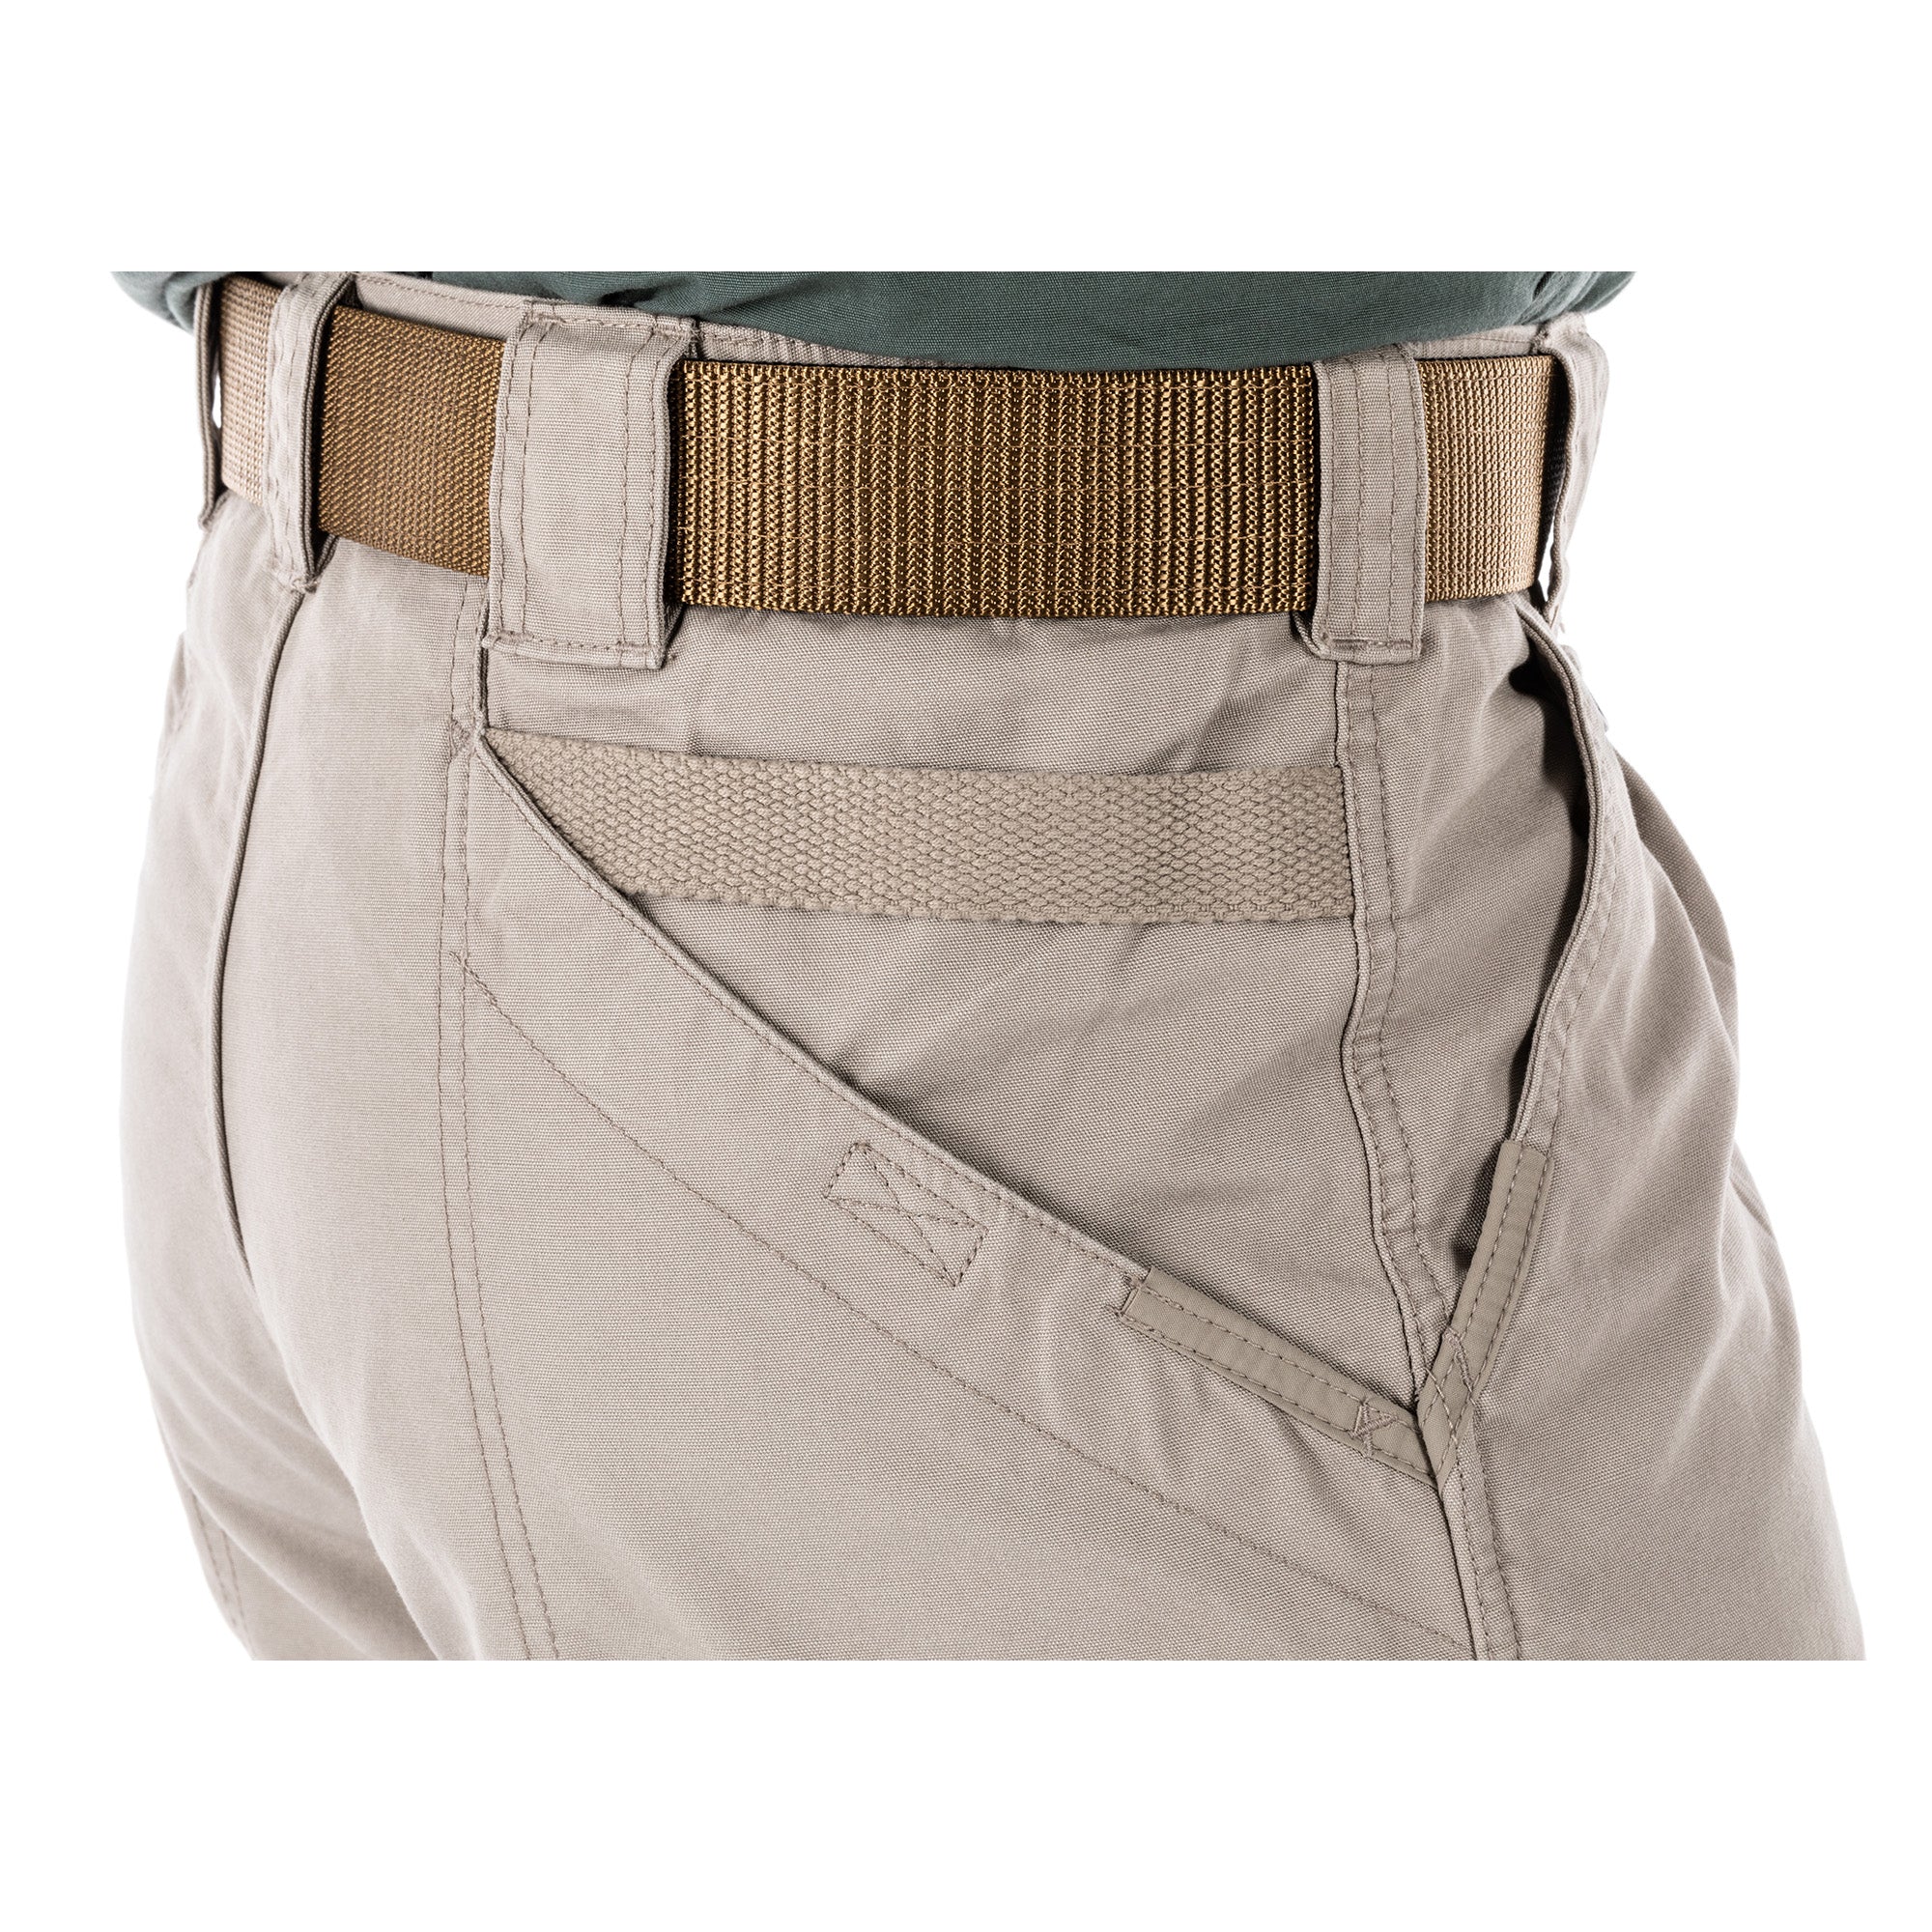 5.11 Tactical® Men's Cotton Canvas Pants - Durable & Comfortable